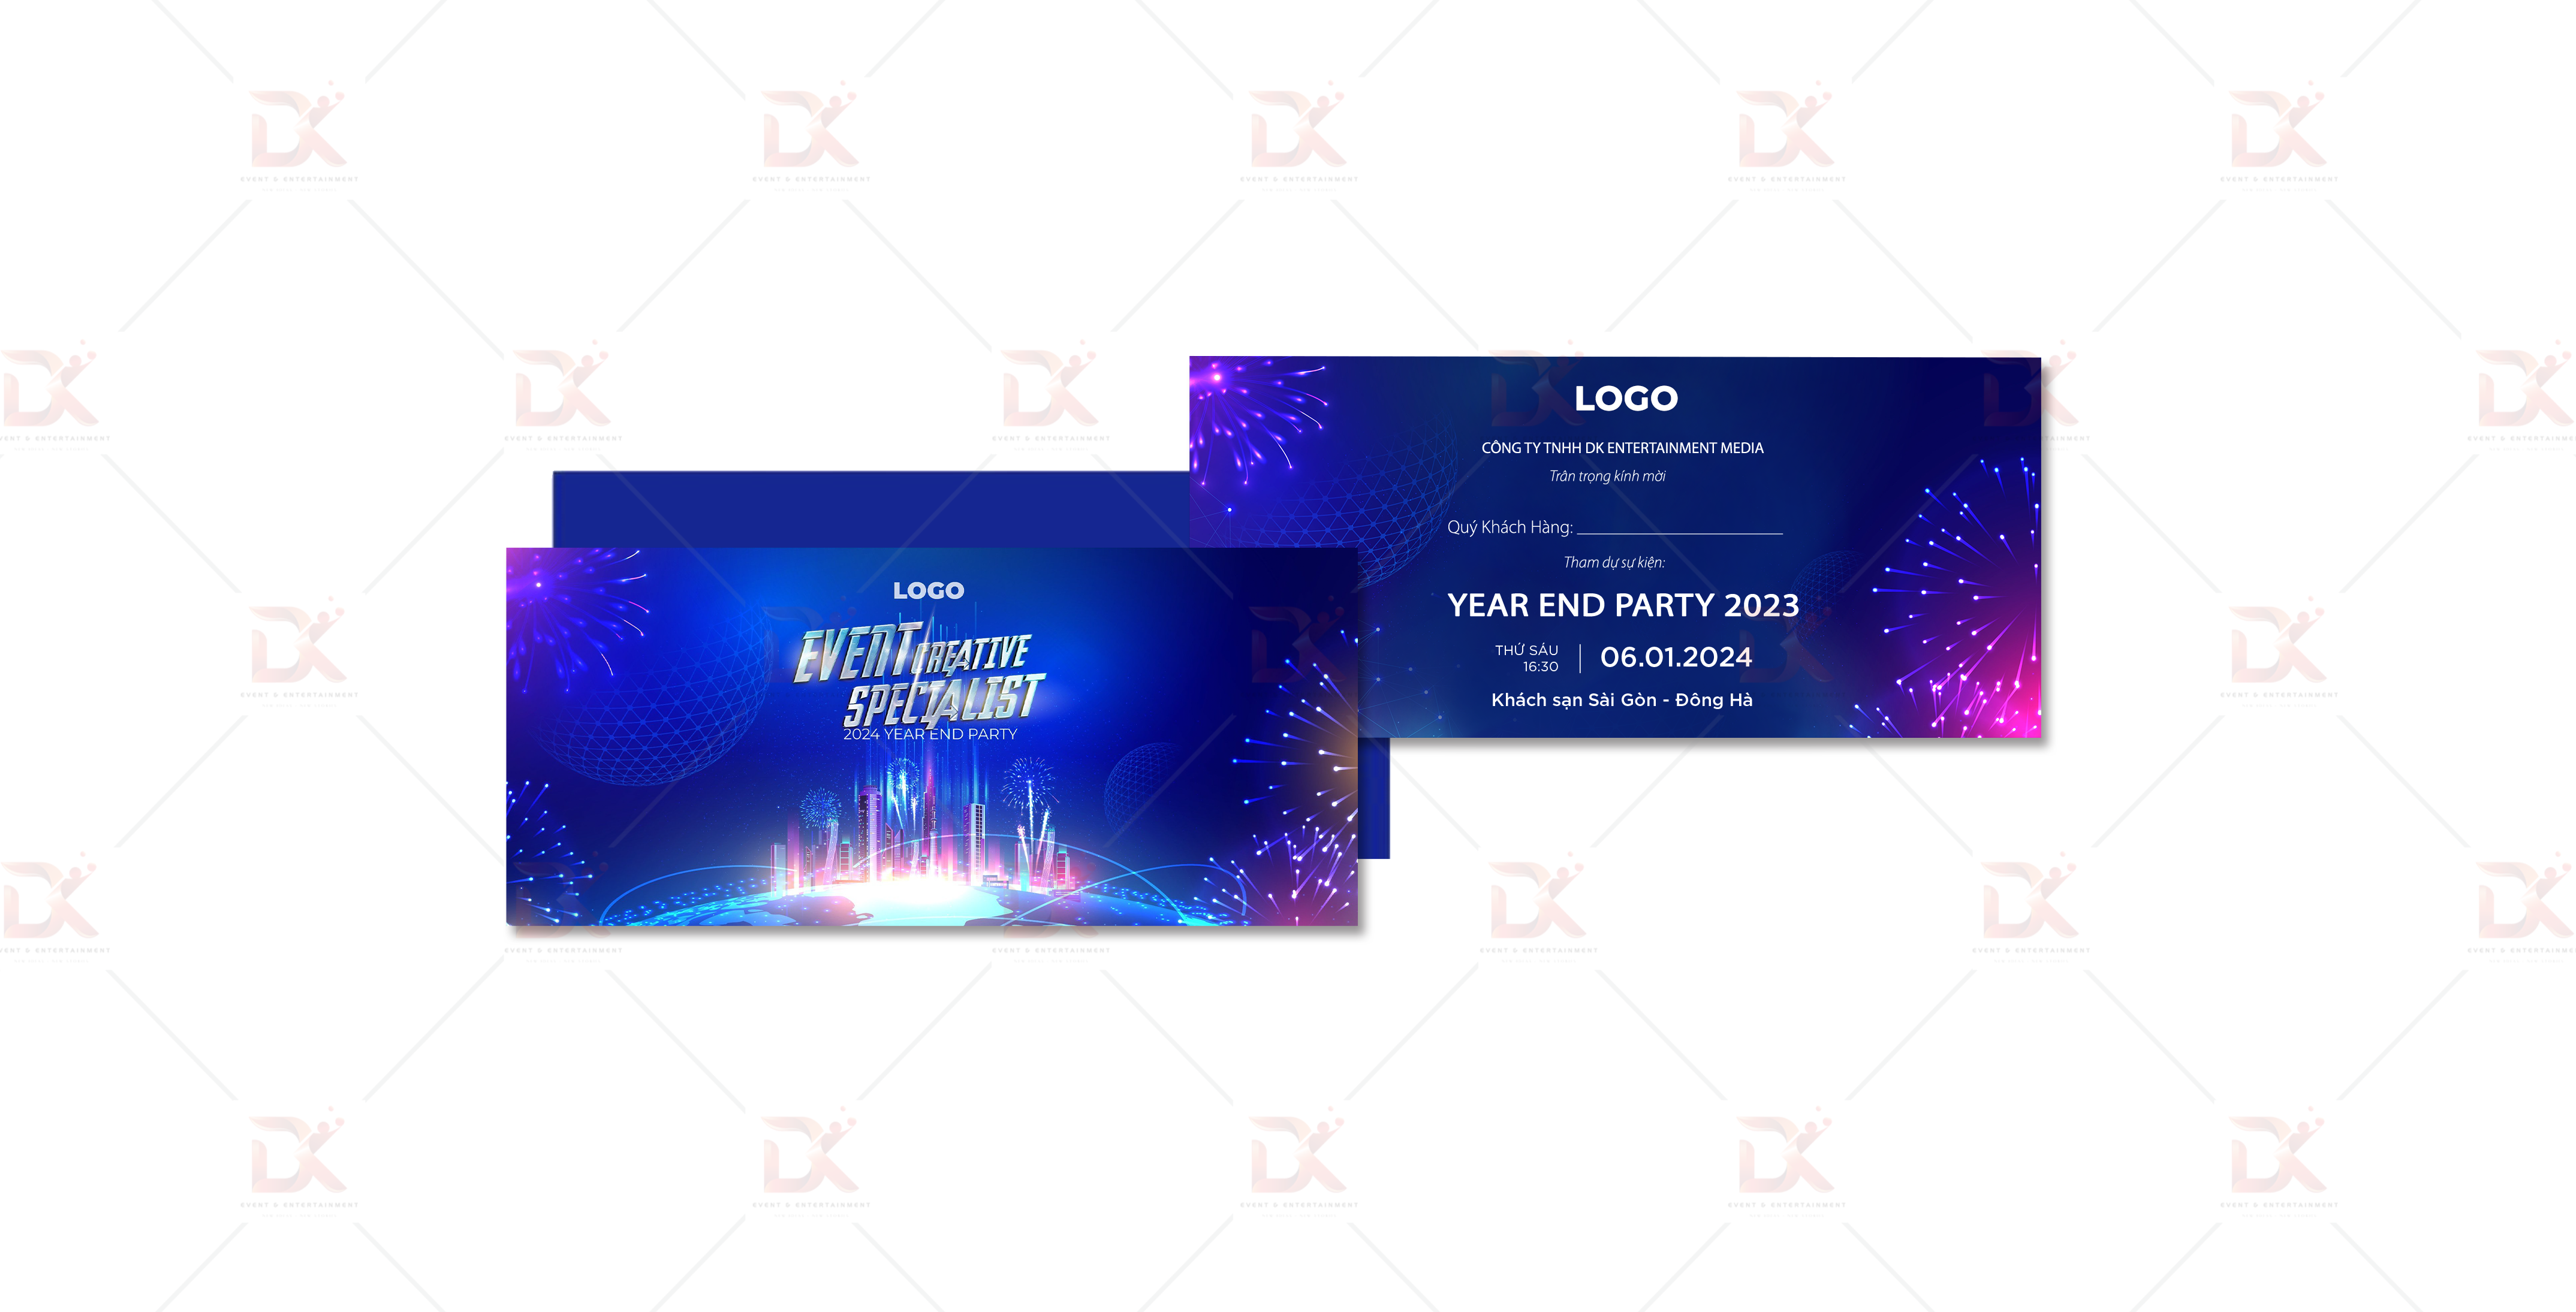 Mẫu thiết kế 2D thư mời Year End Party DK Entertainment Media 7